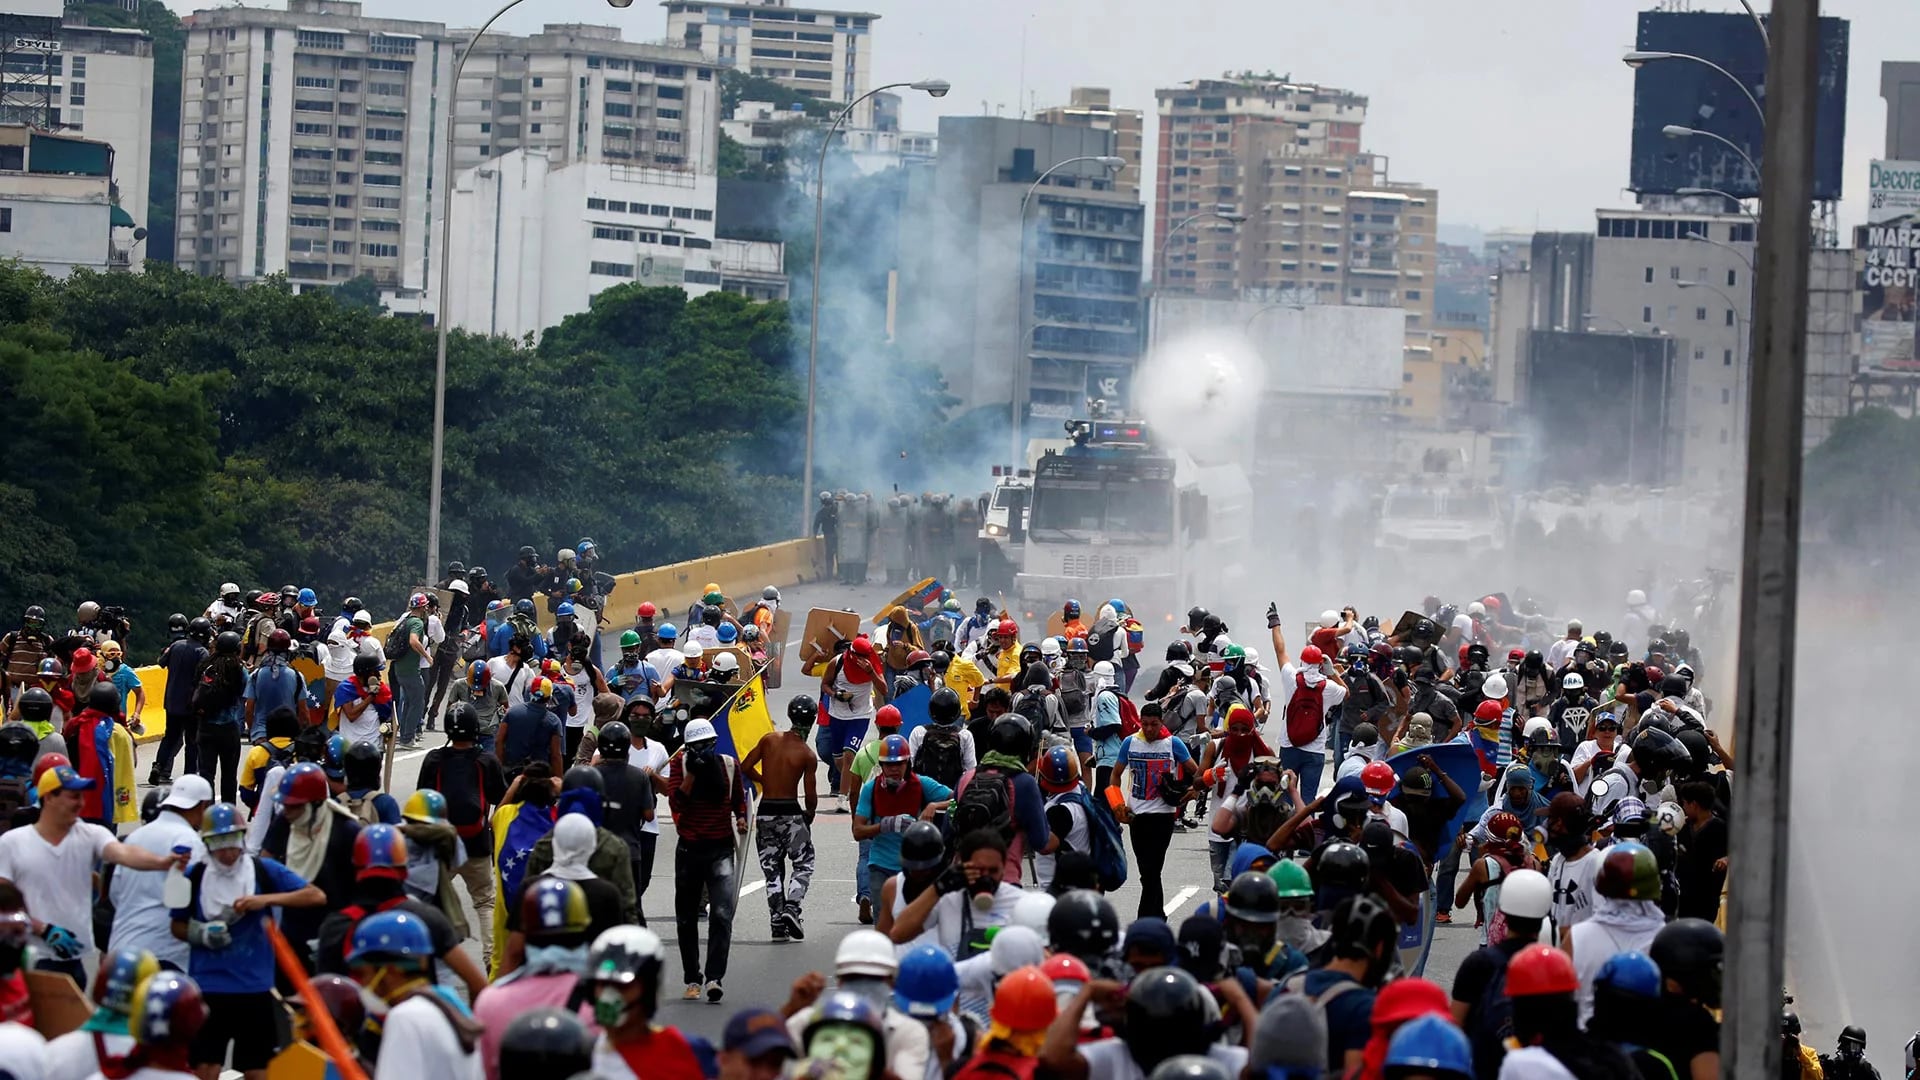 Las fuerzas chavistas reprimen toda manifestación opositora (Reuters)